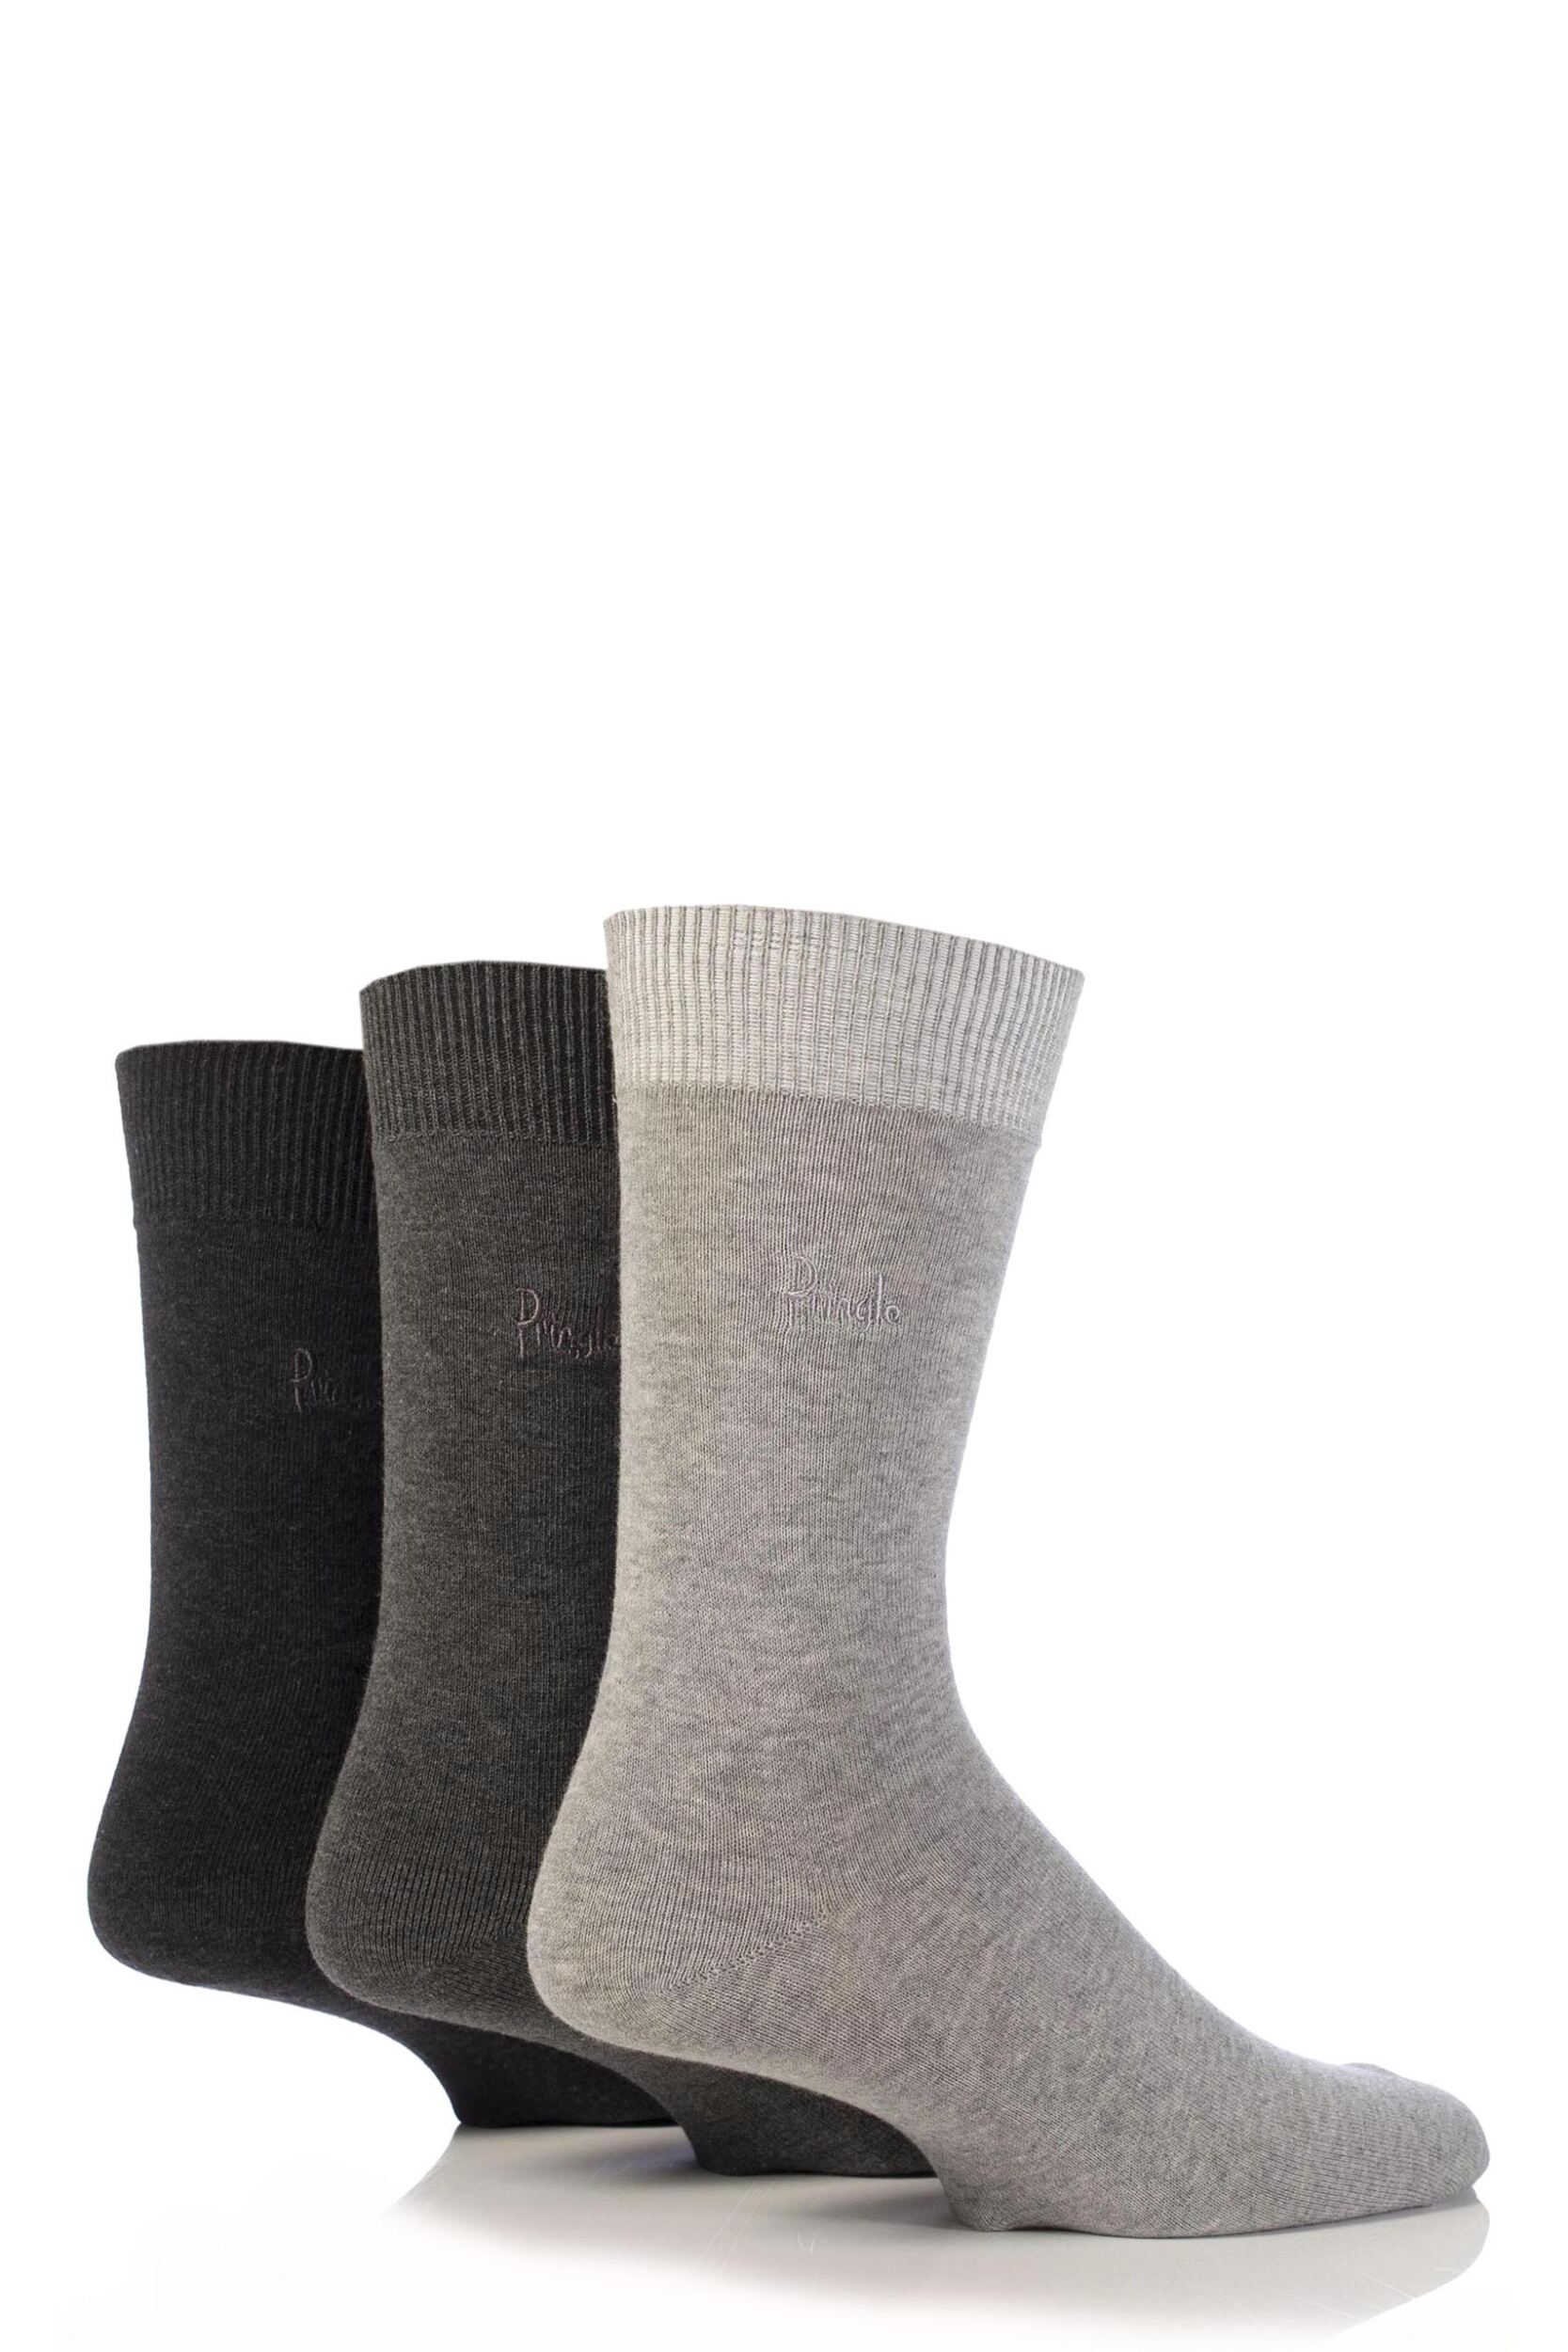 6-Pair: Ankle High Opaque Nylon Trouser Socks